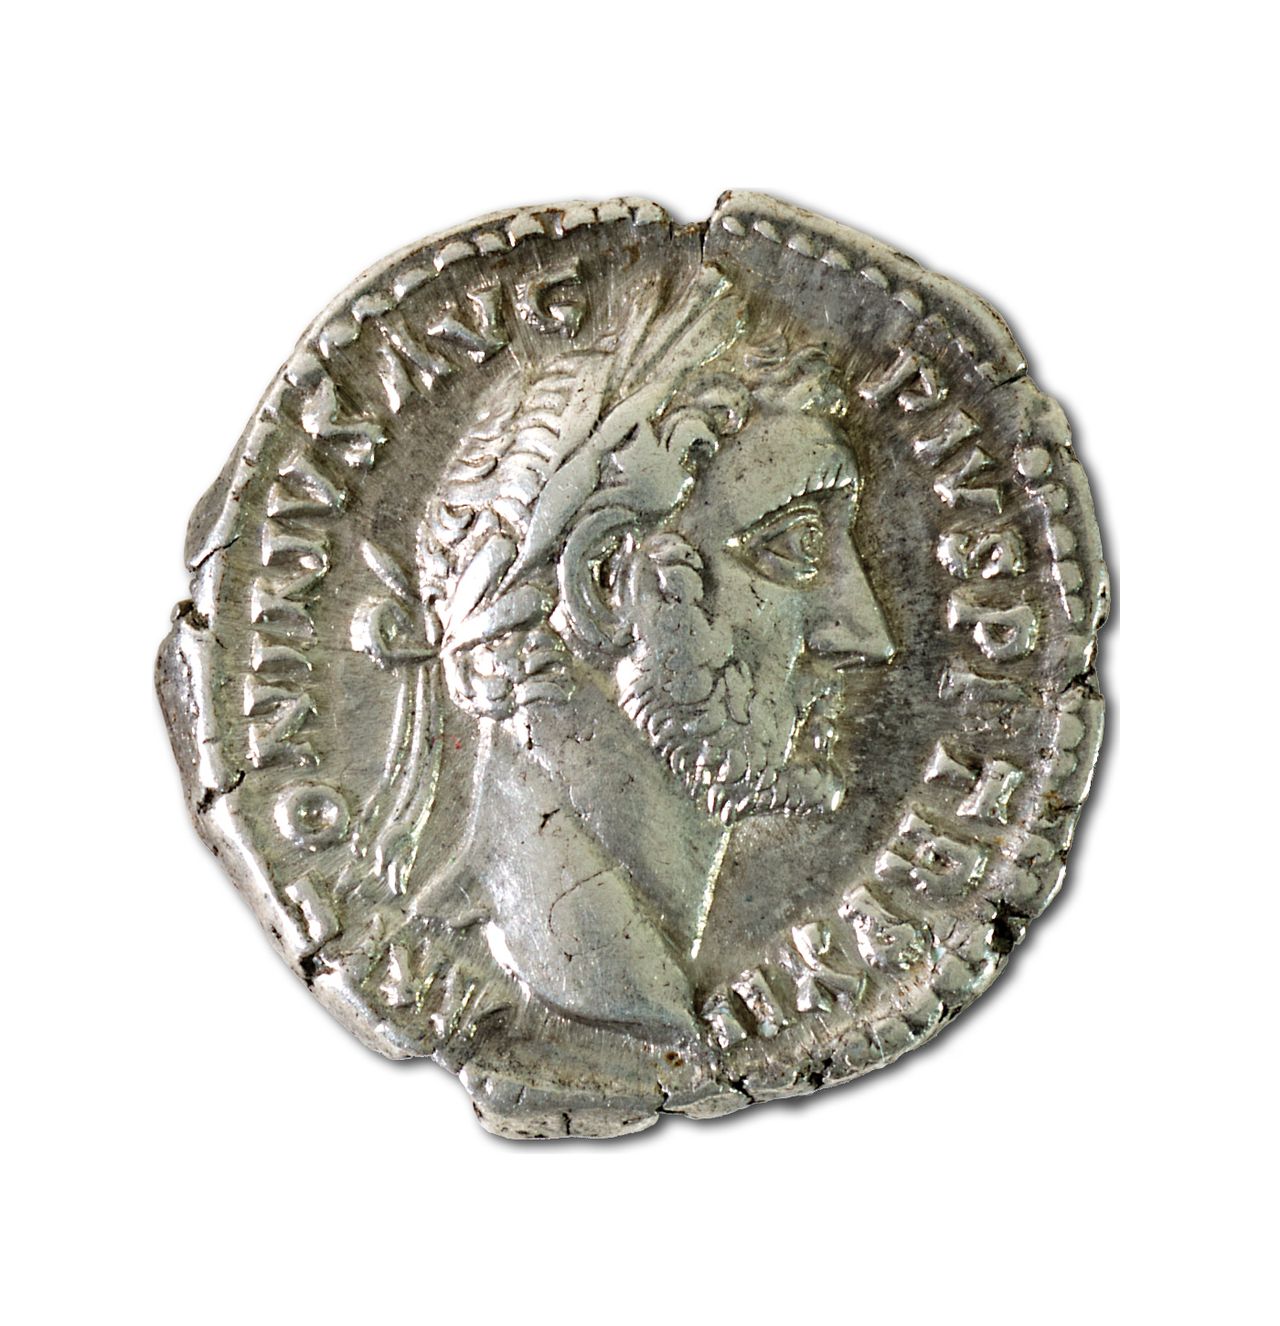 A small silver Roman coin.